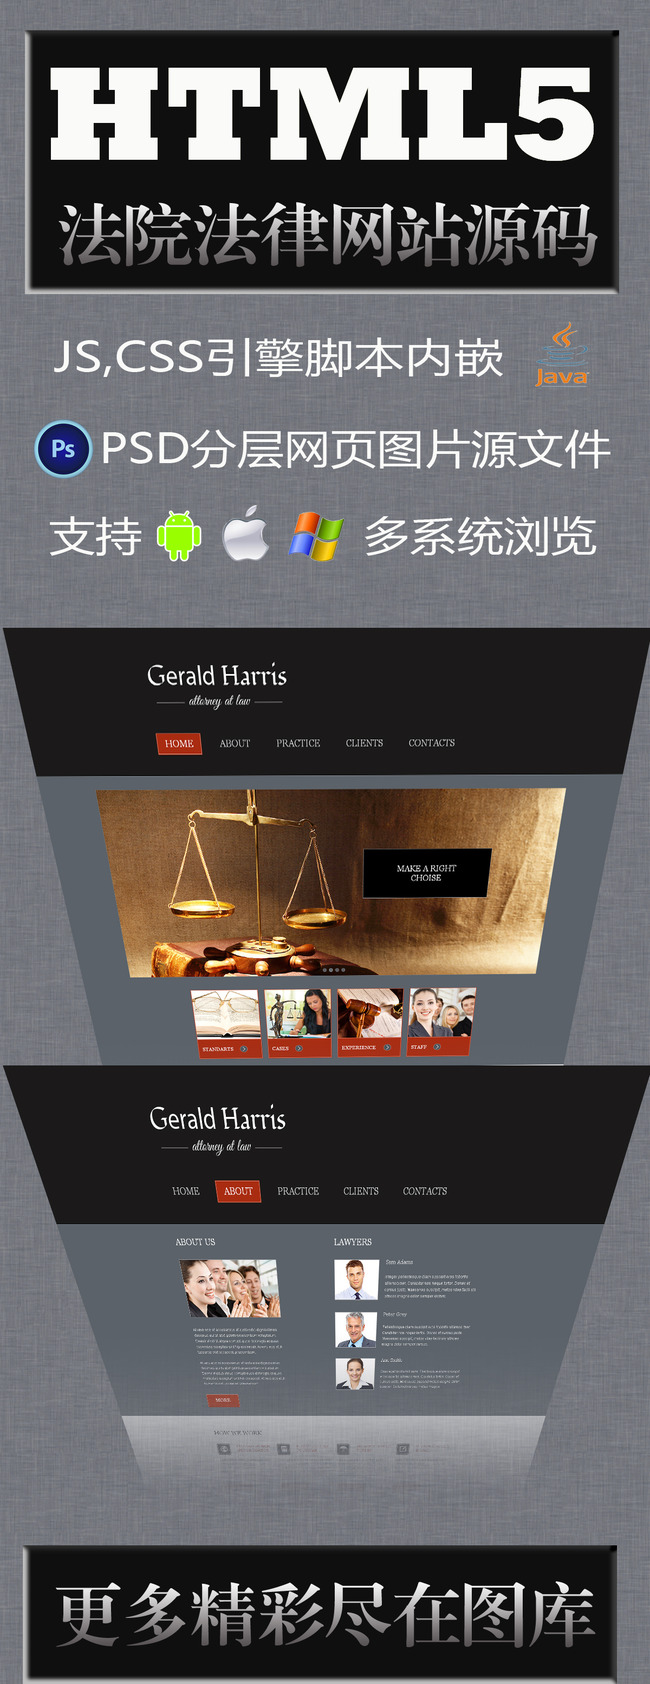 法院法官网站模版,html5静态网页模板下载(图片